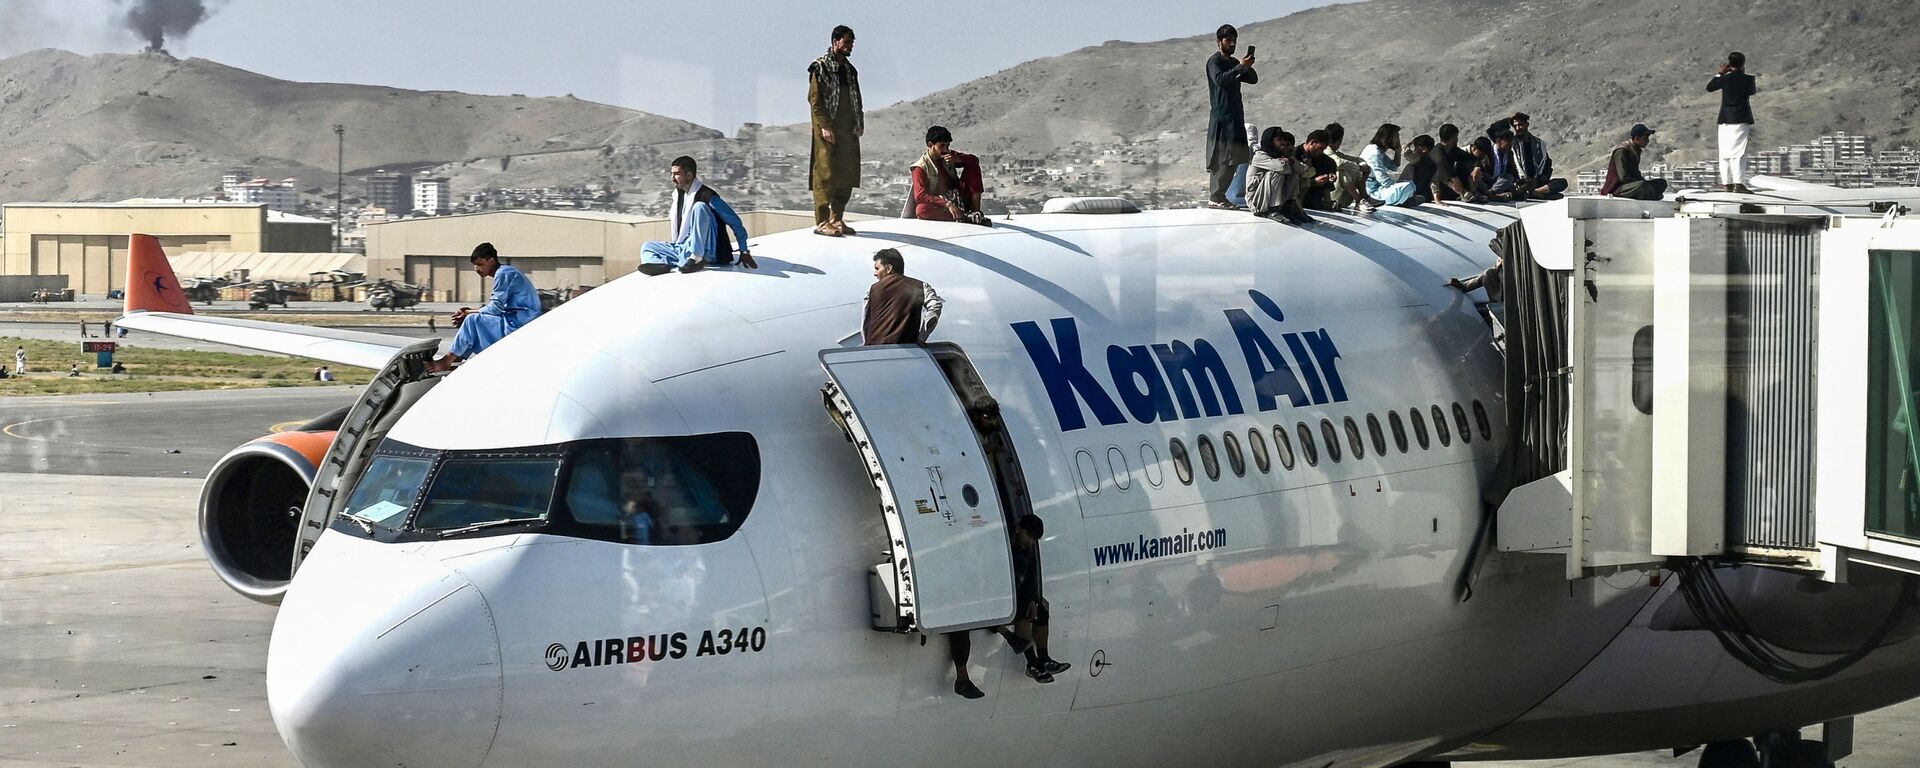 Афганцы забираются на самолет в аэропорту Кабула, пытаясь спастись из страны - Sputnik Армения, 1920, 17.08.2021